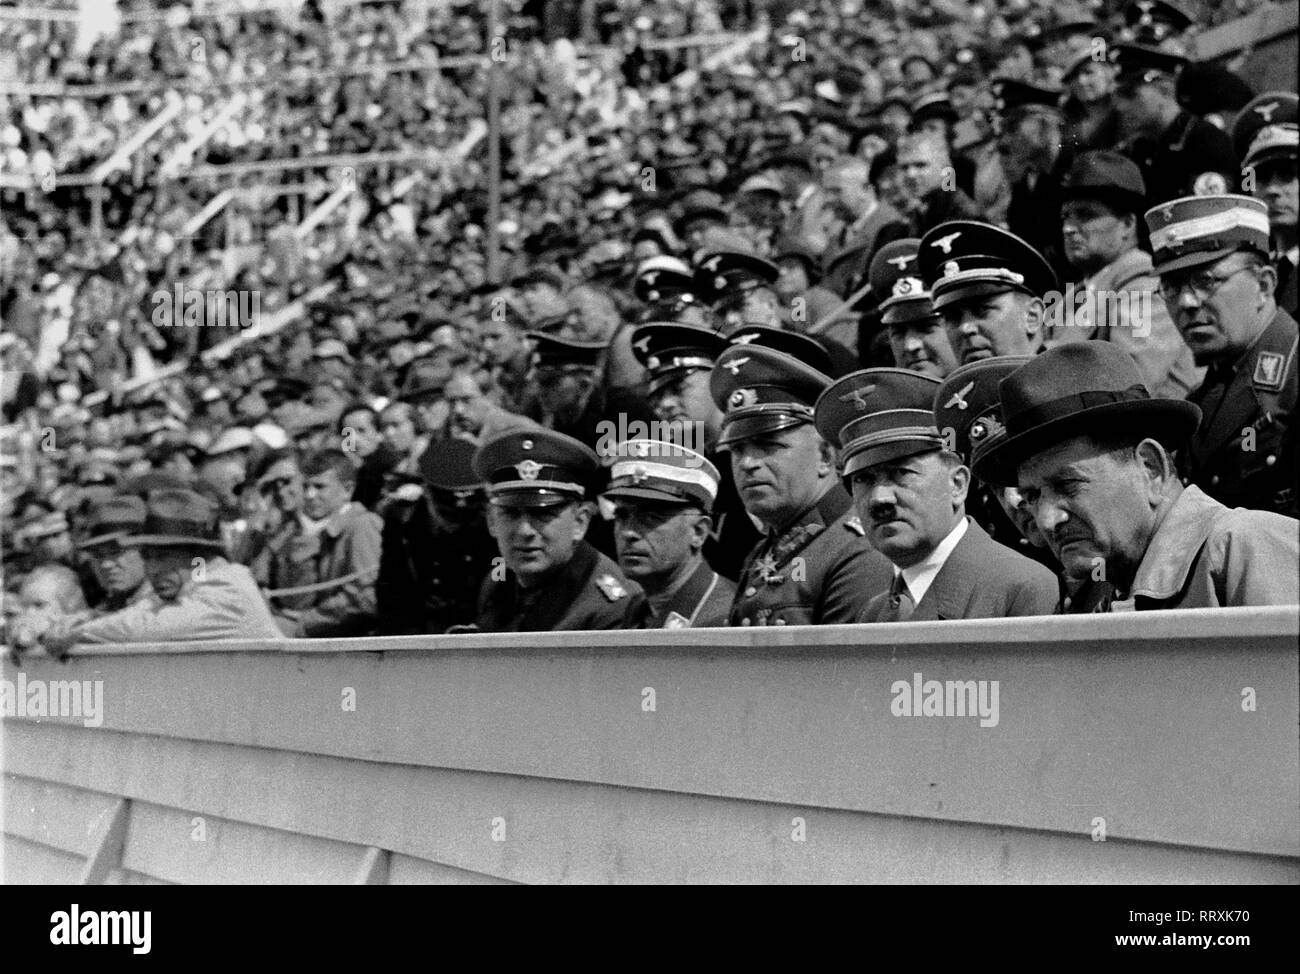 Jeux Olympiques d'été 1936 - L'Allemagne, Troisième Reich - Jeux Olympiques Jeux Olympiques d'été de 1936, à Berlin. Le chancelier du Reich Adolf Hitler lors des compétitions - parmi les spectateurs. L'image date d'août 1936. Photo Erich Andres Banque D'Images